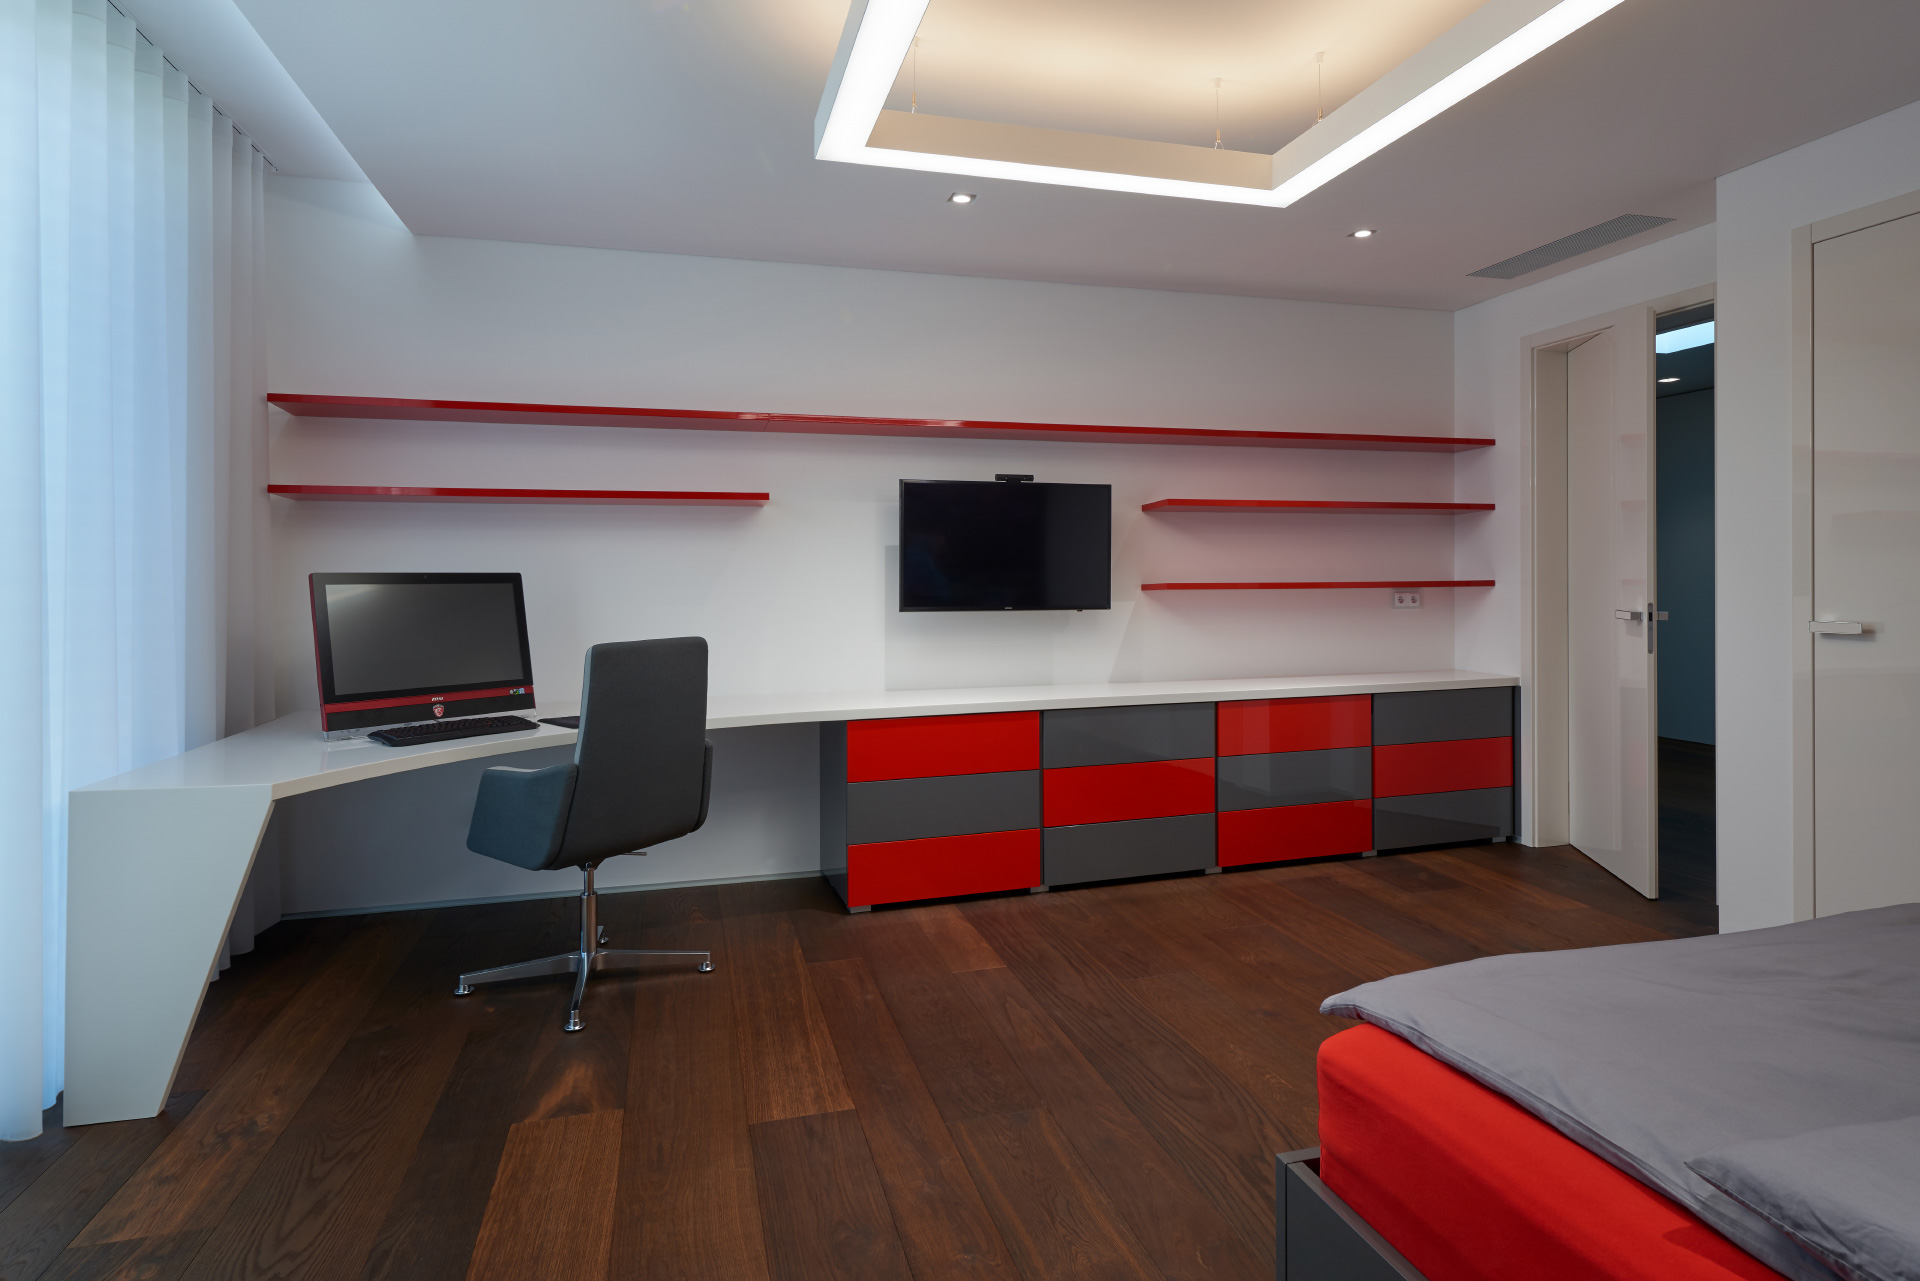 Hanák Furniture Bespoke realization Complete interior